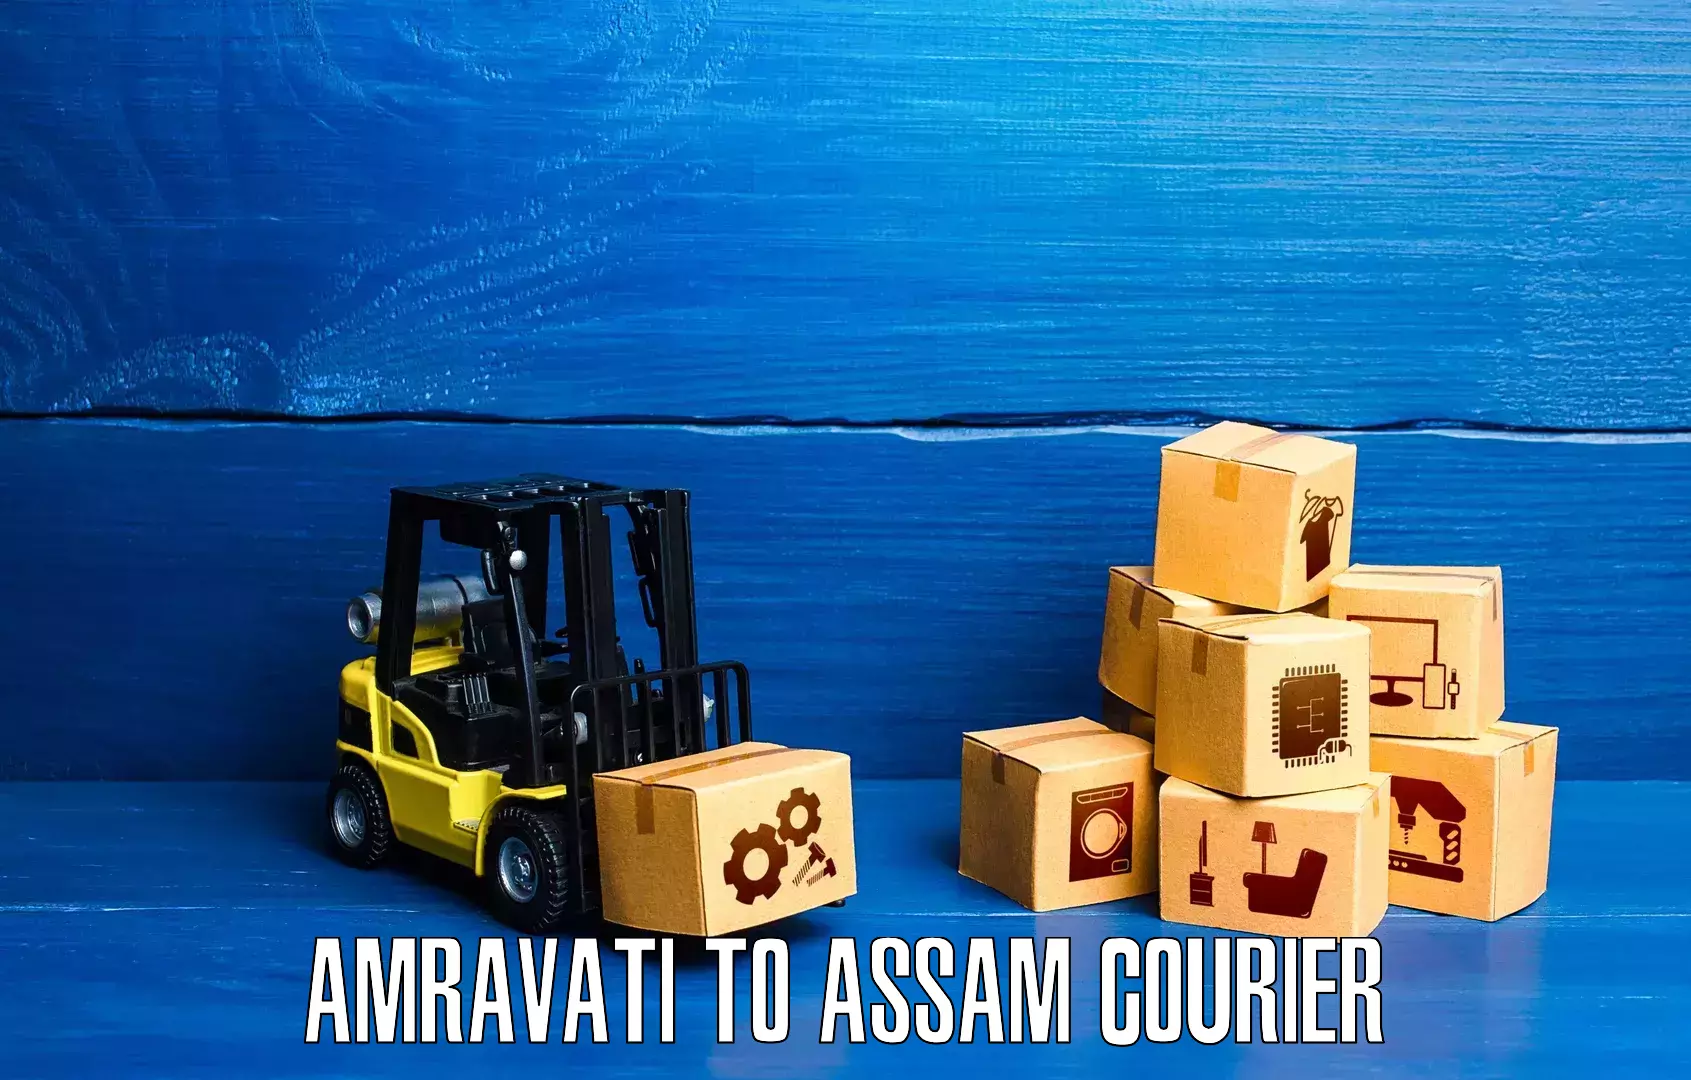 Global shipping solutions Amravati to IIIT Guwahati